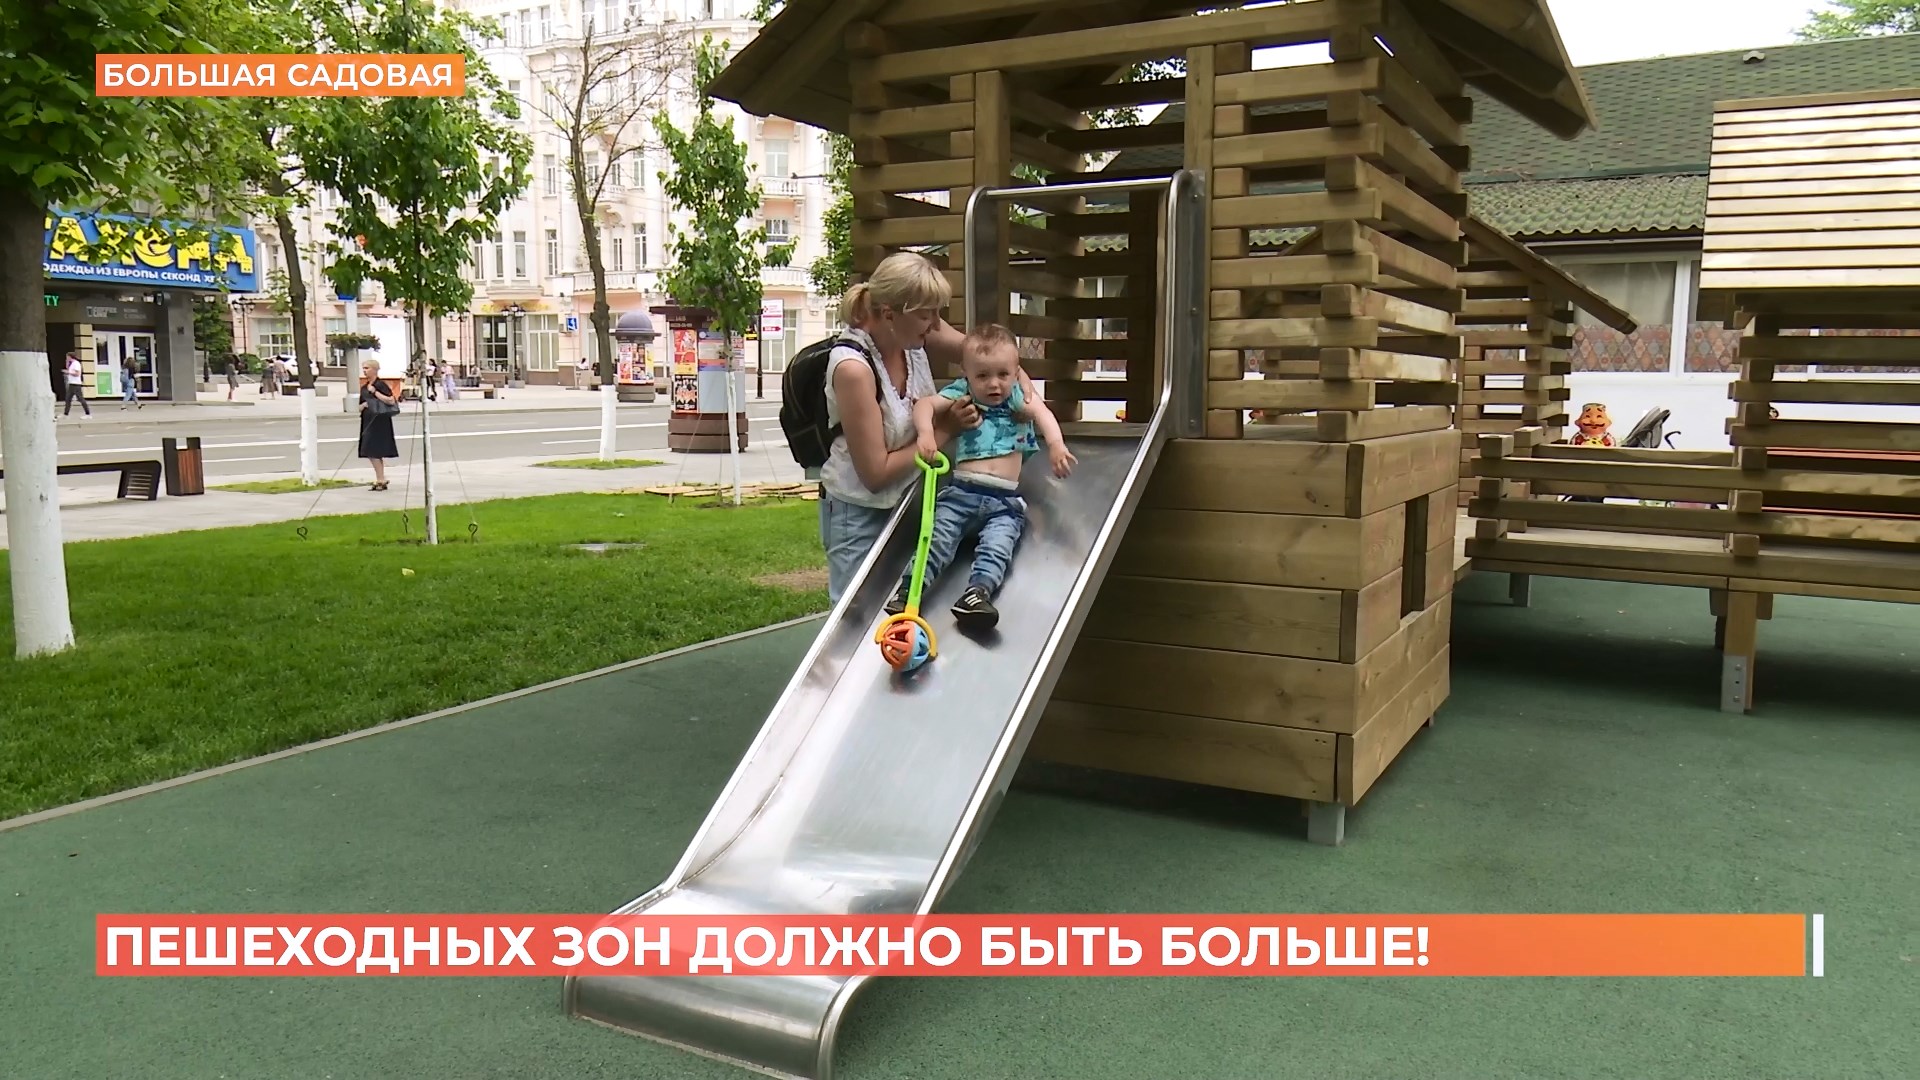 Новые пешеходные зоны появились в нескольких районах Ростова